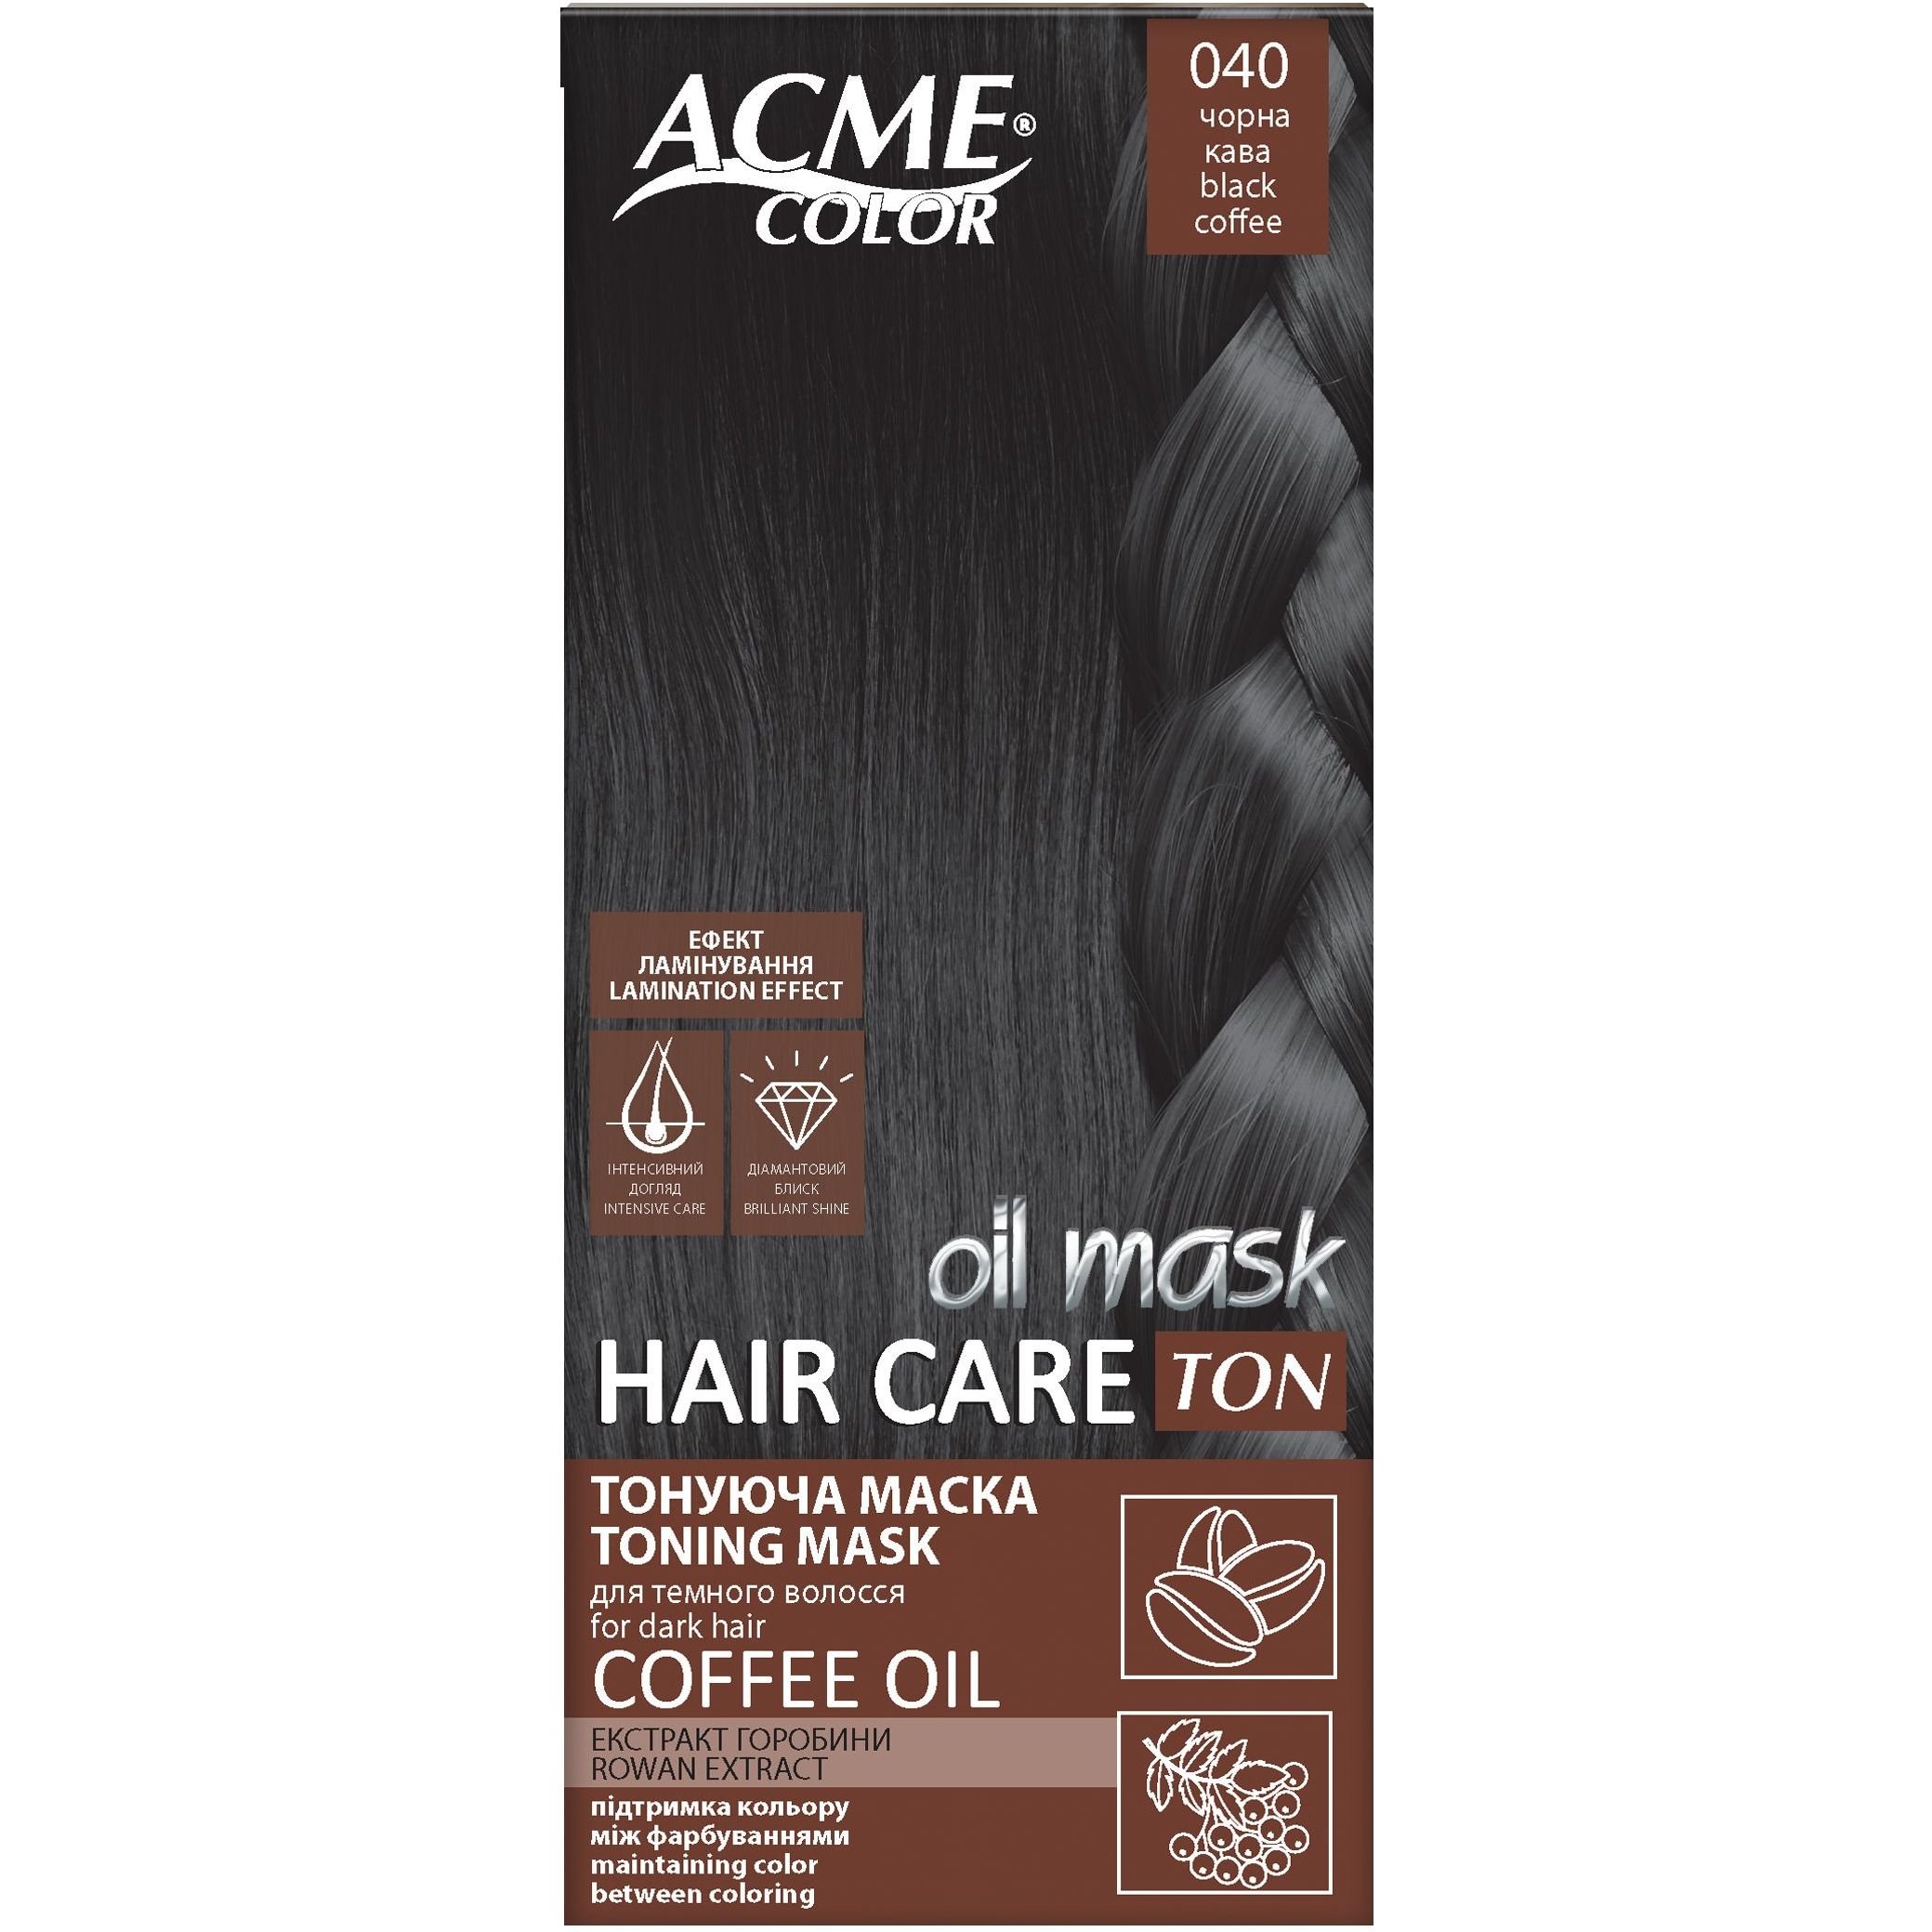 Тонирующая маска для волос Acme Color Hair Care Ton oil mask, тон 040, черный кофе, 30 мл - фото 1